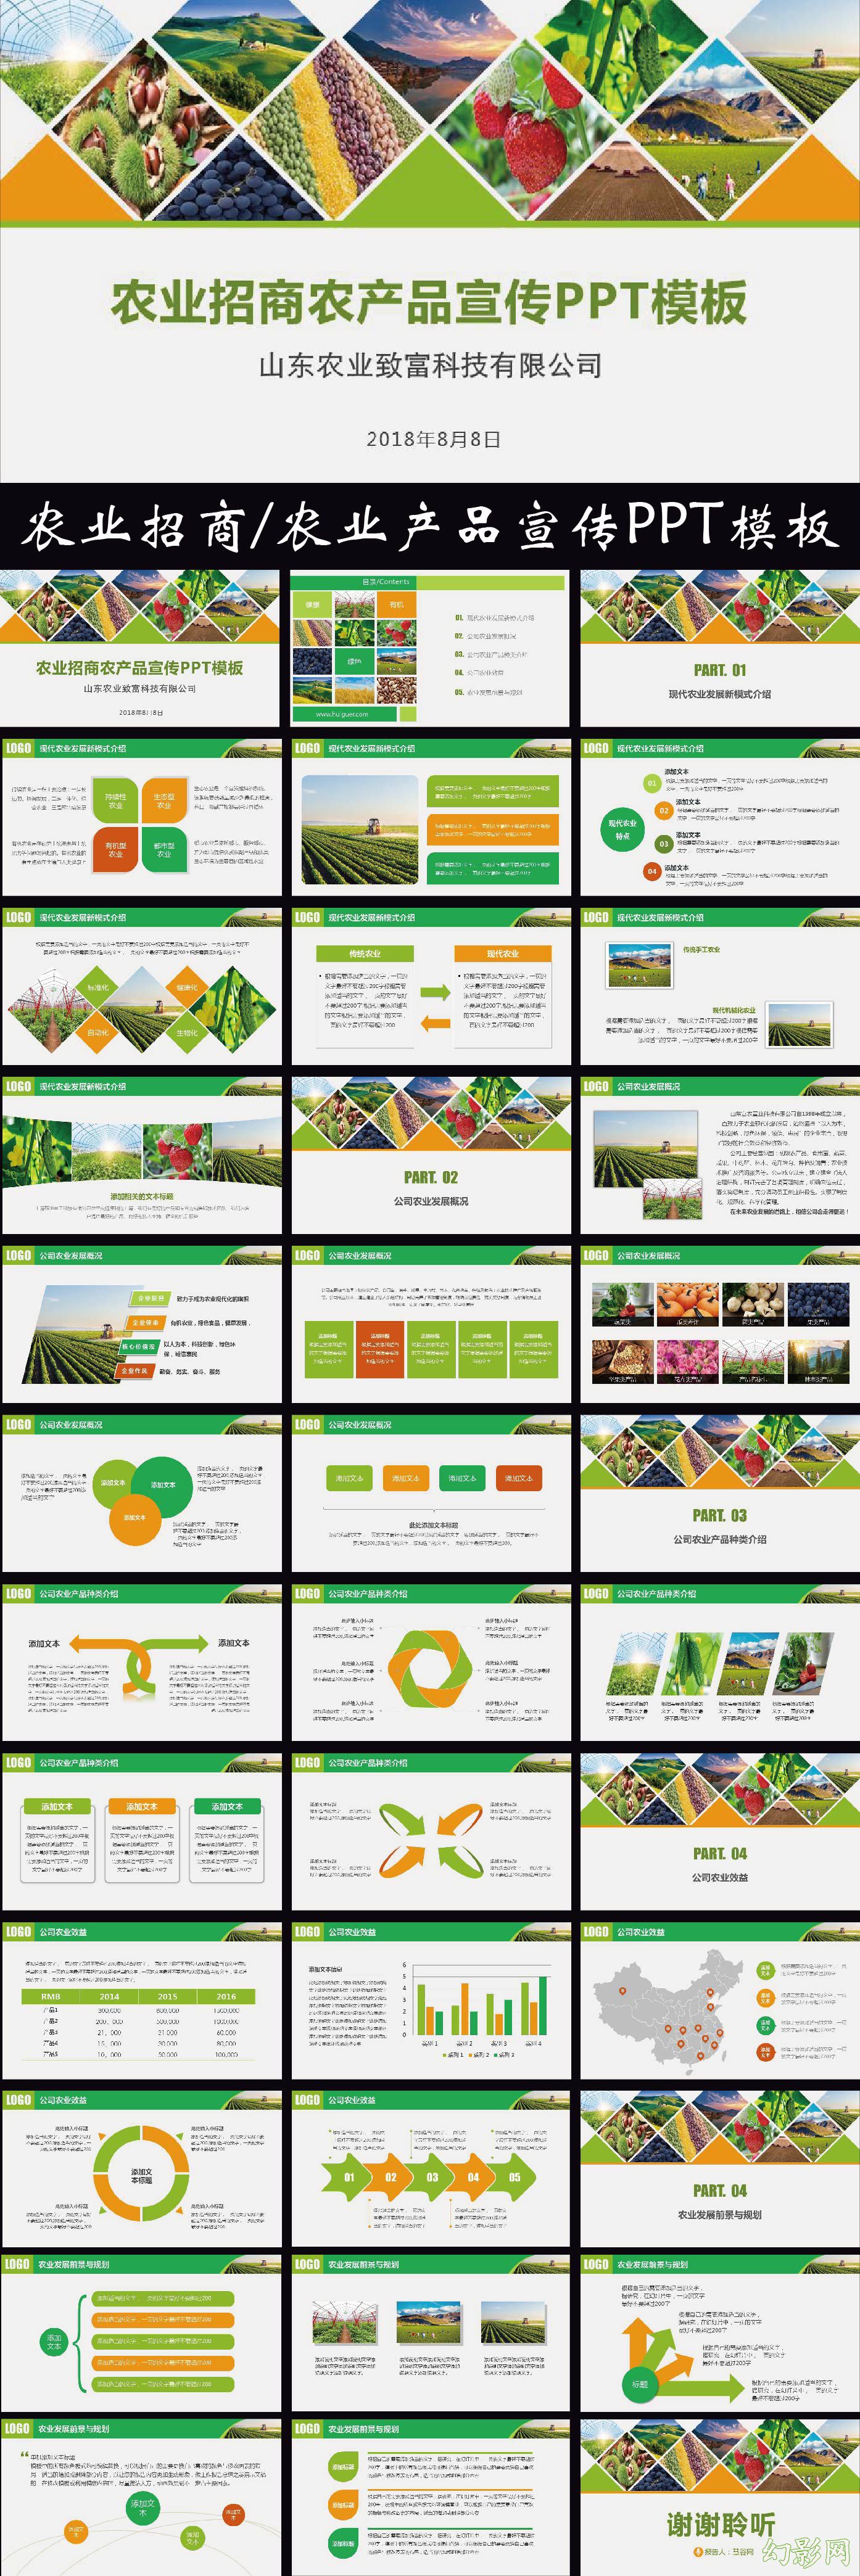 农产品企业宣传/农产品招商 动态PPT模板